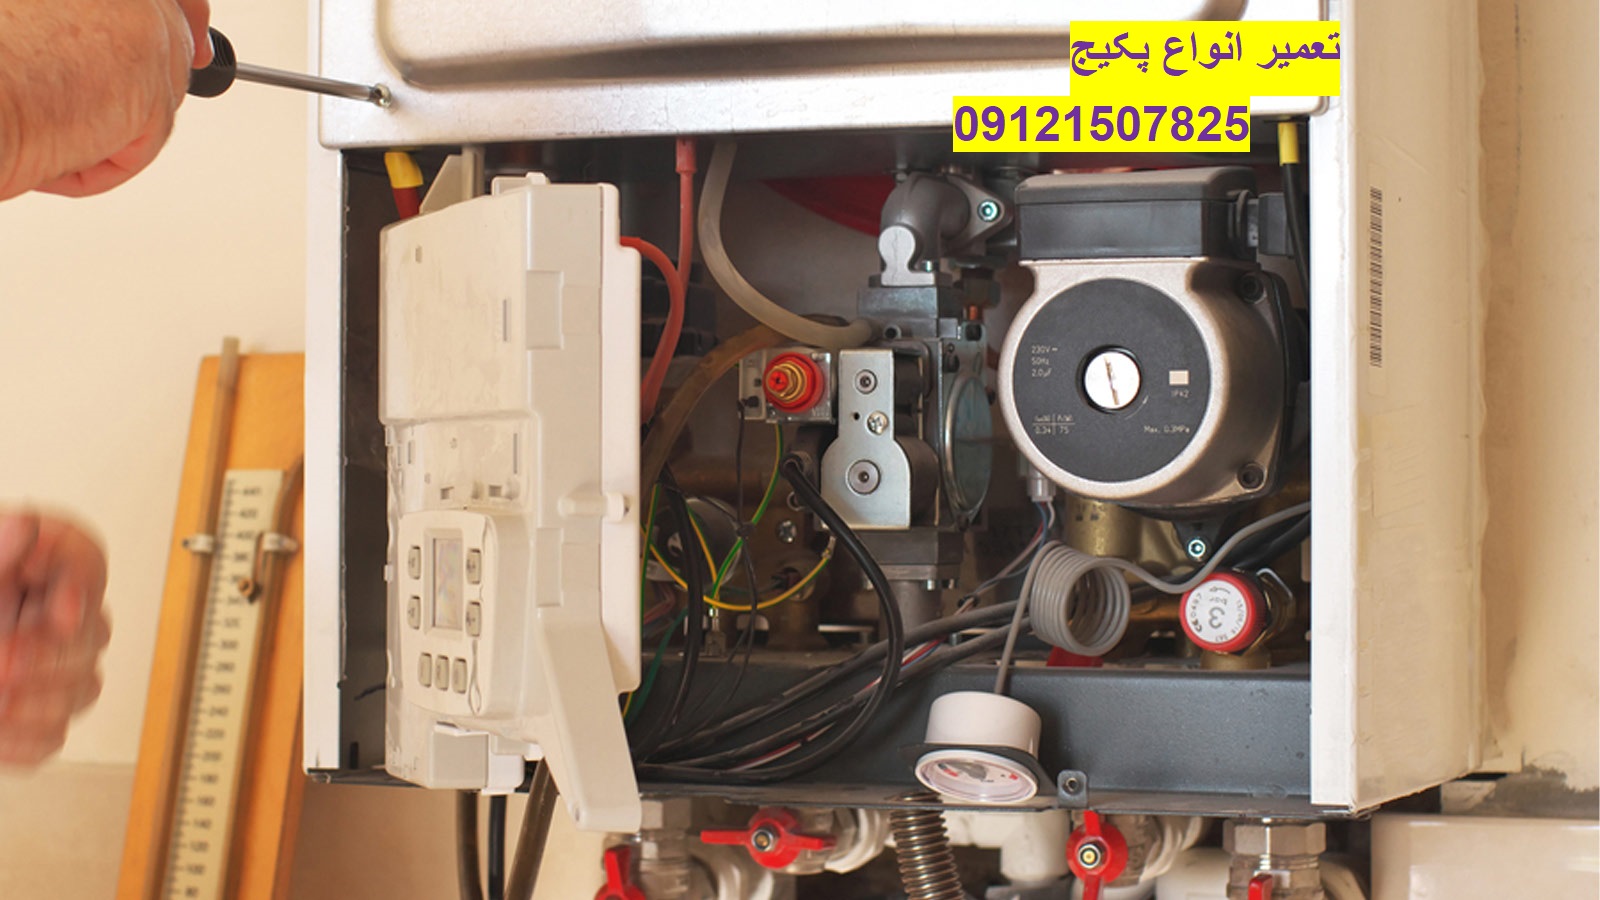 نصب پکیج برقی در تهران 09121507825// تعمیر و بازسازی موتورخانه